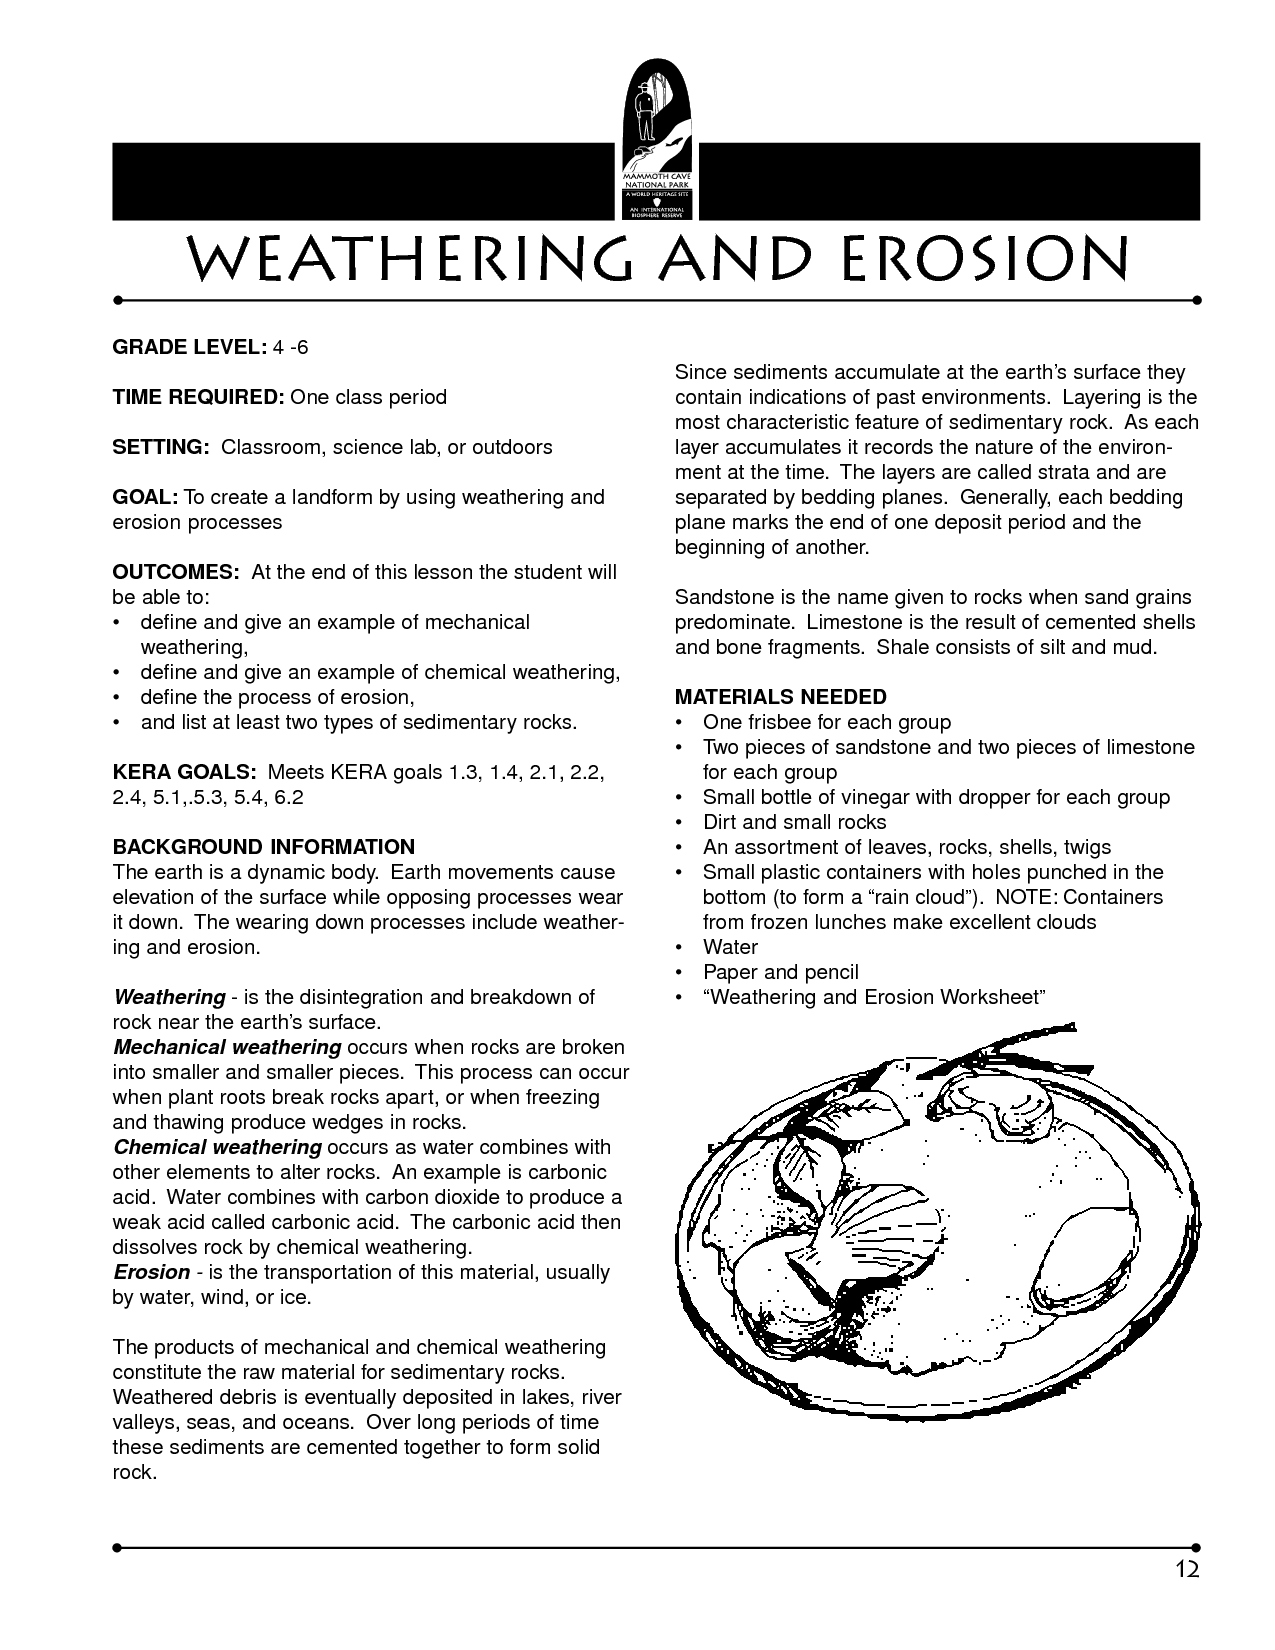 Weathering and Erosion Worksheet Image